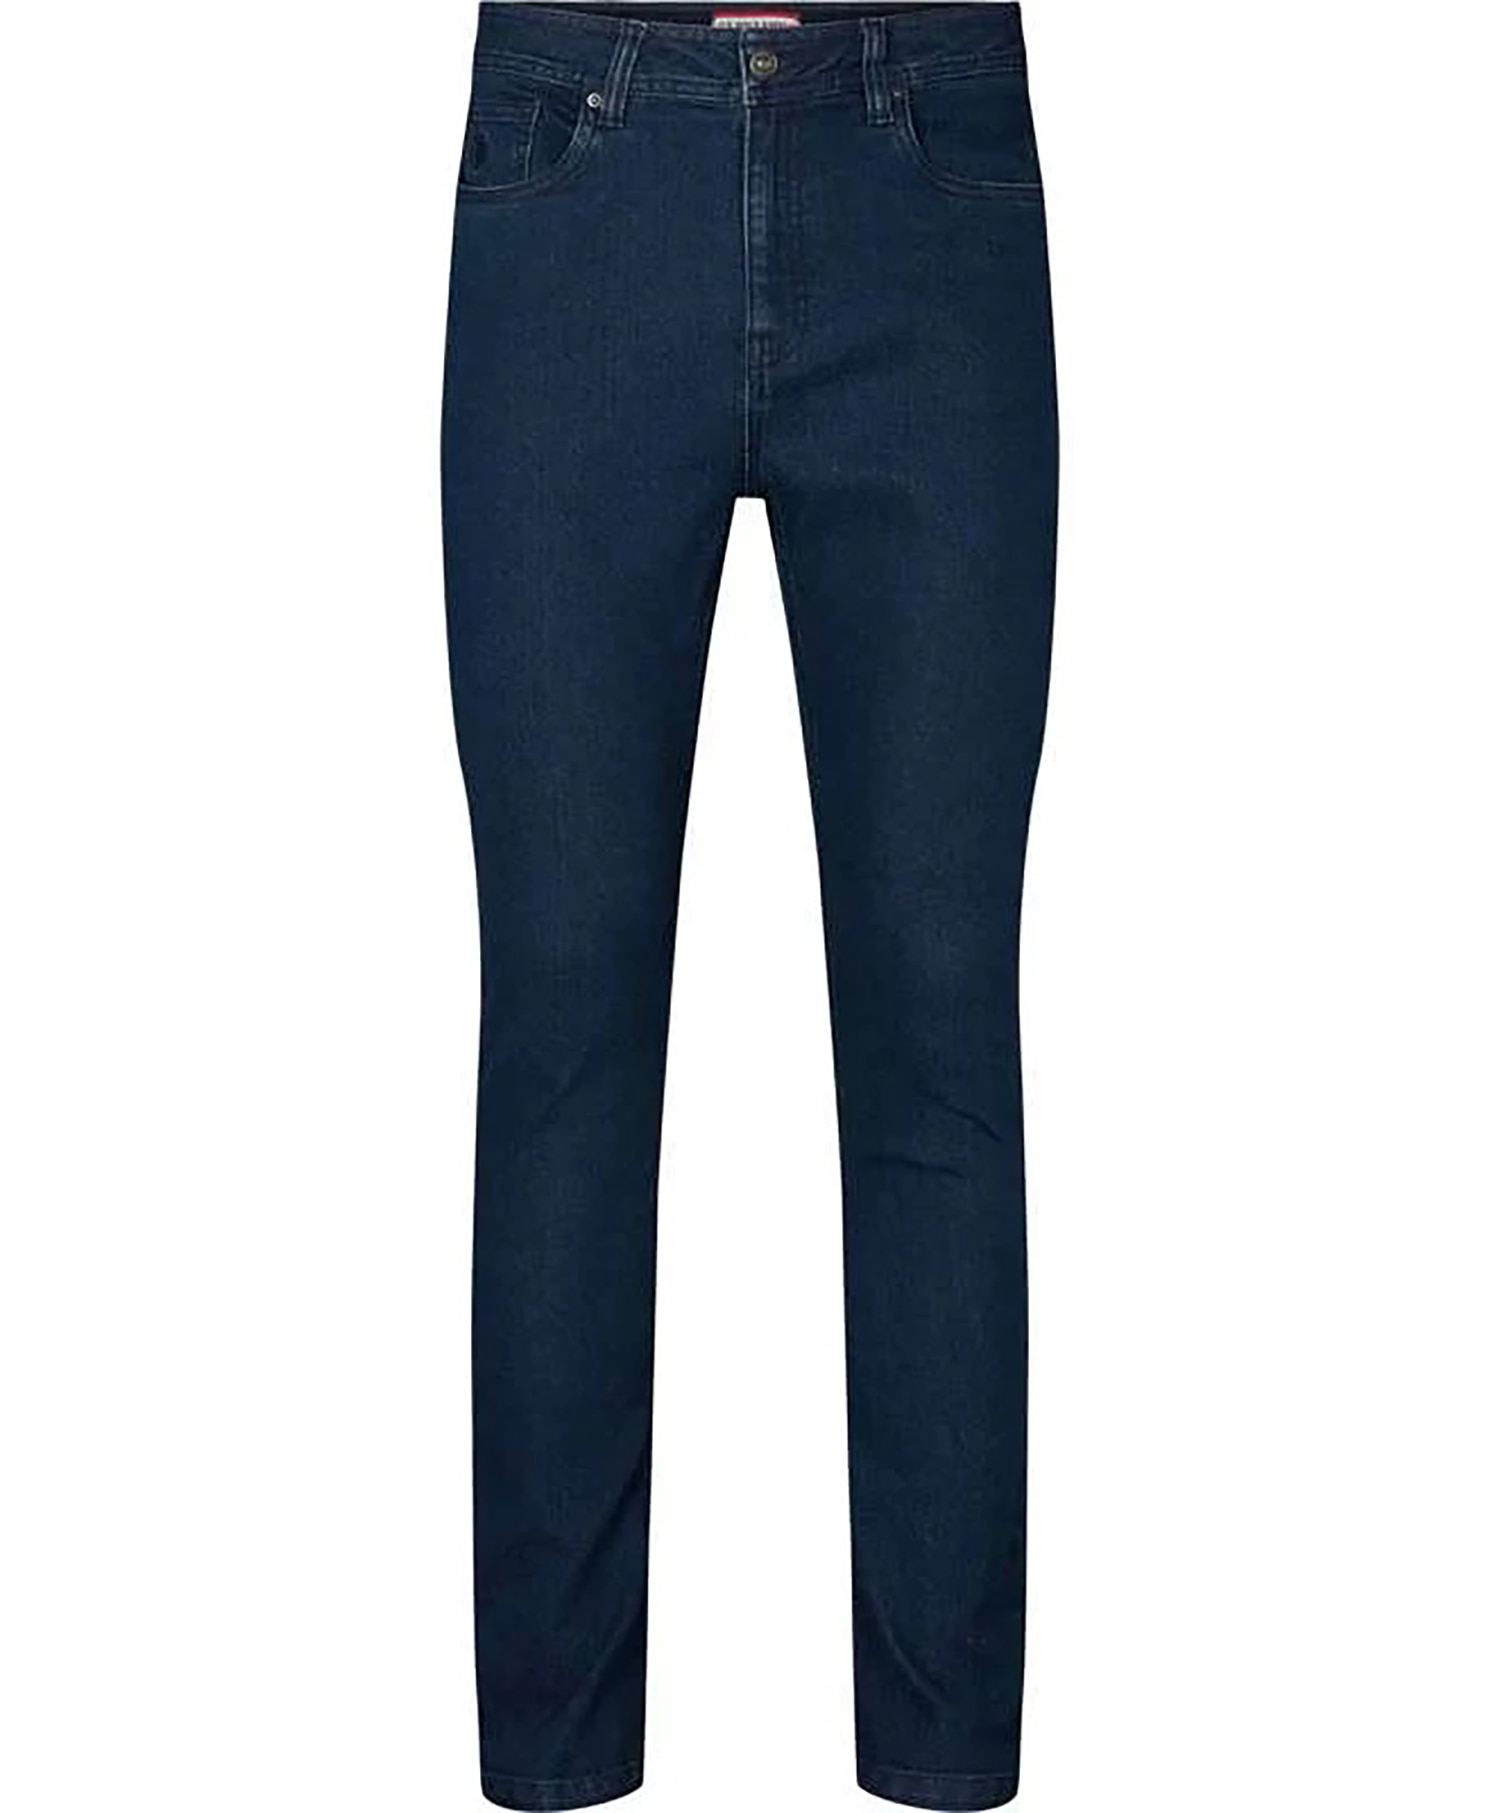 U.S Polo Casbian Slim Jeans